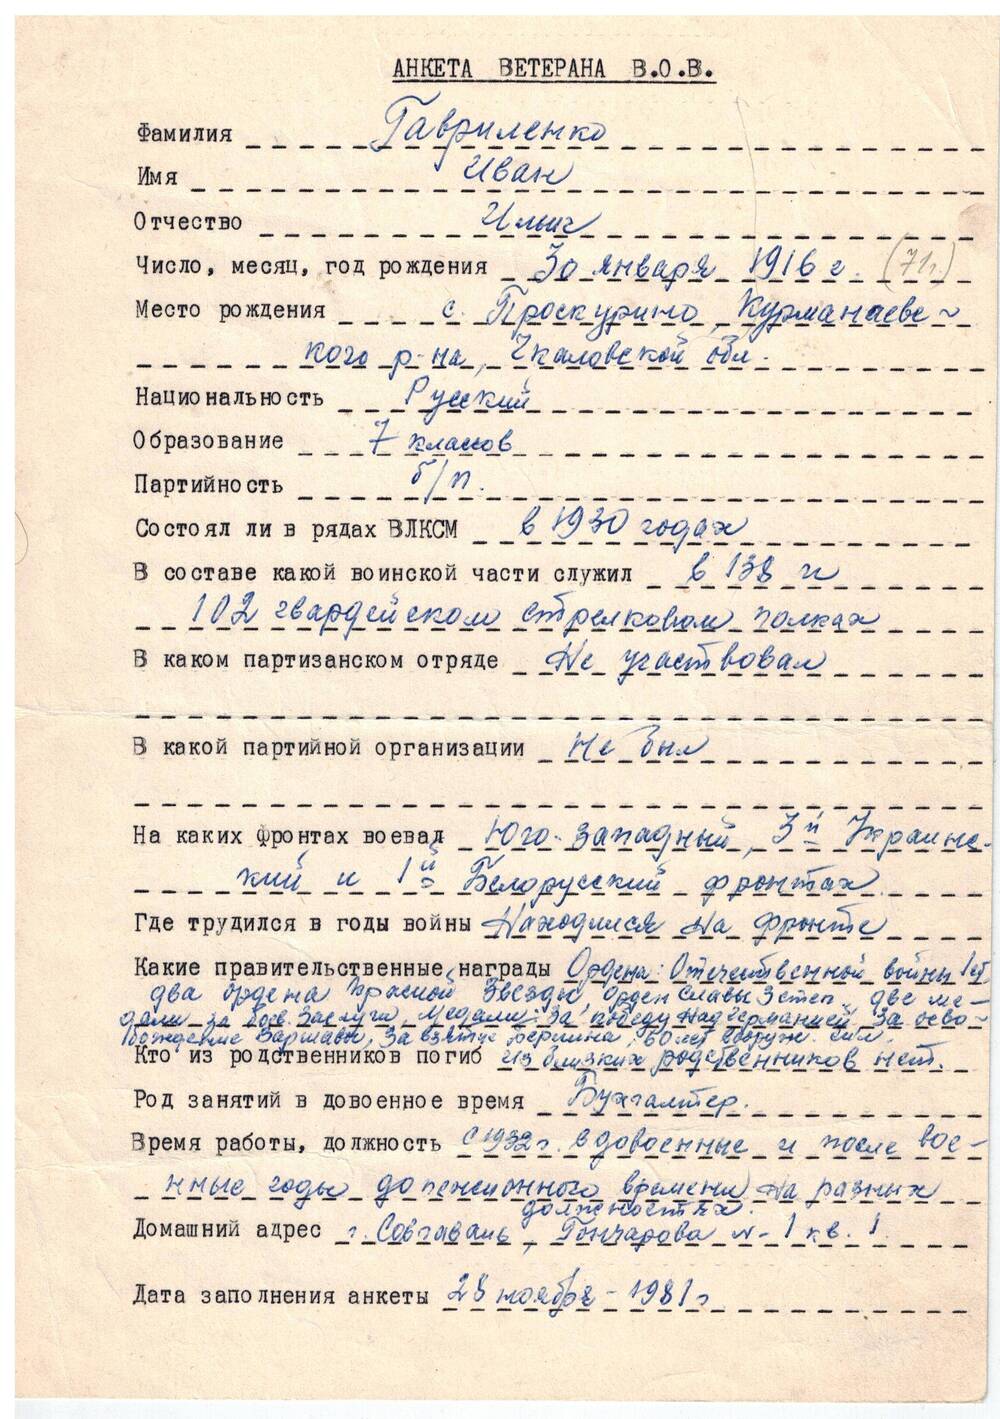 Анкета ветерана Великой Отечественной войны Гавриленко Ивана Ильича, 1916 г.р.